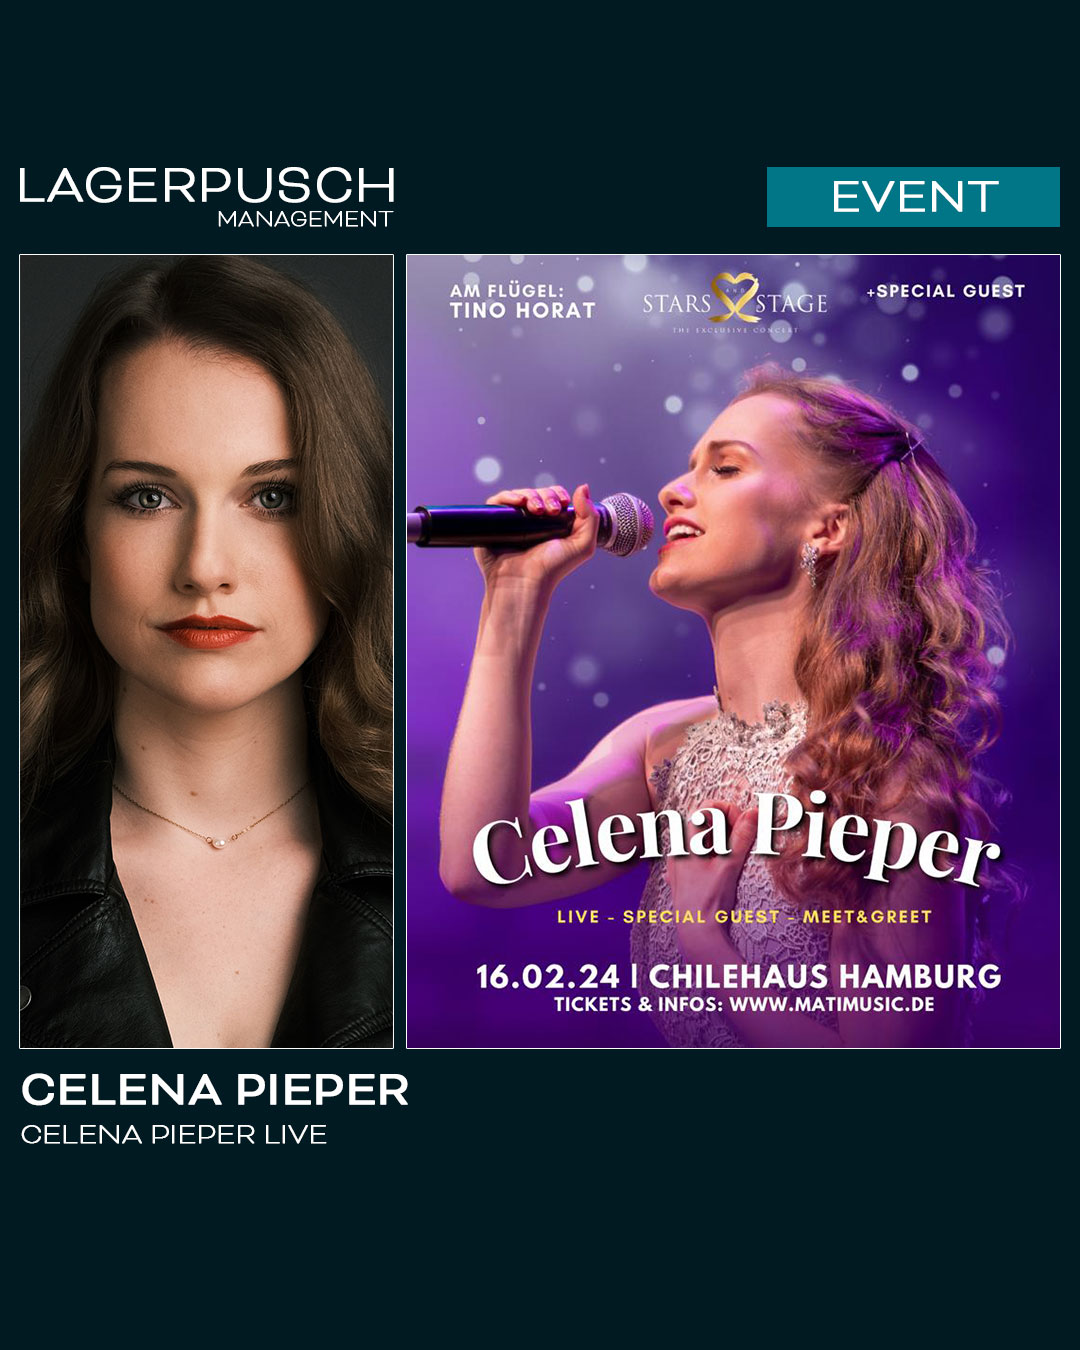 TONIGHT ON STAGE: Celena Pieper gibt erstes Solo-Konzert in Hamburg